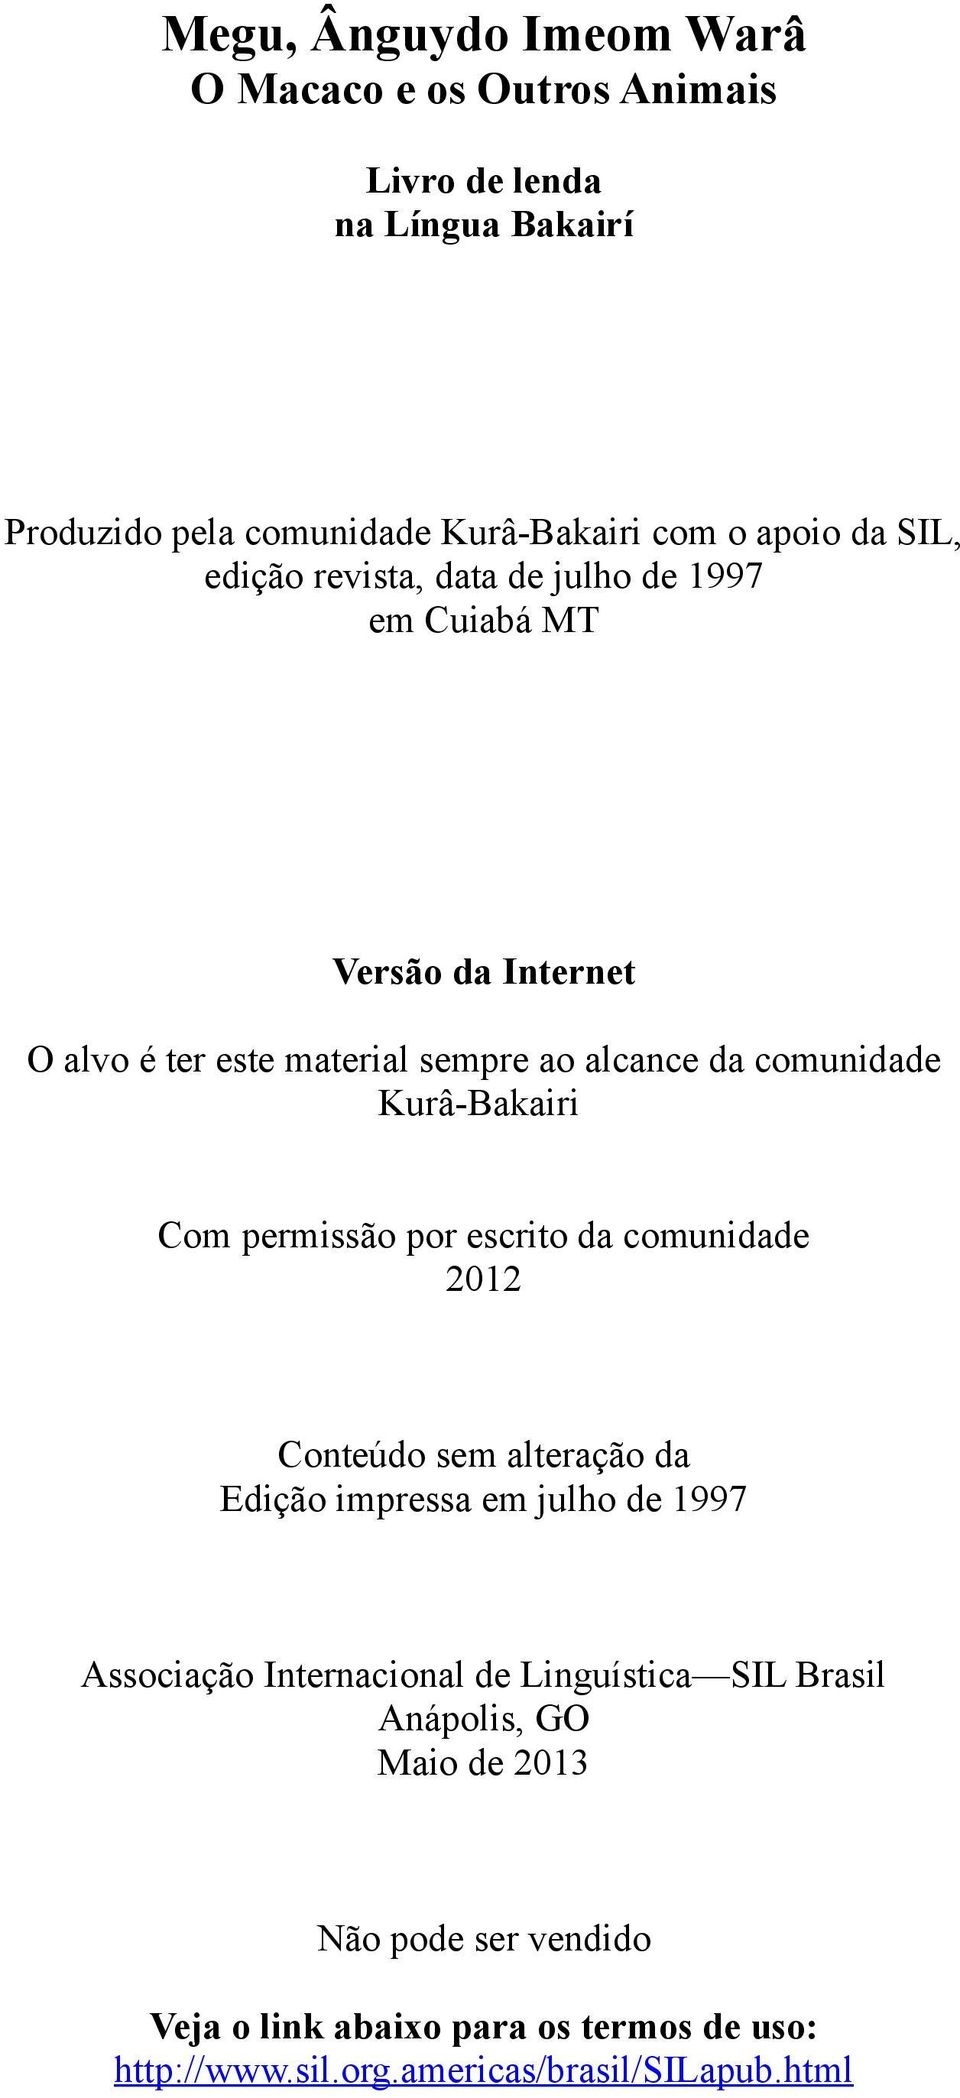 Kurâ-Bakairi Com permissão por escrito da comunidade 2012 Conteúdo sem alteração da Edição impressa em julho de 1997 Associação Internacional de